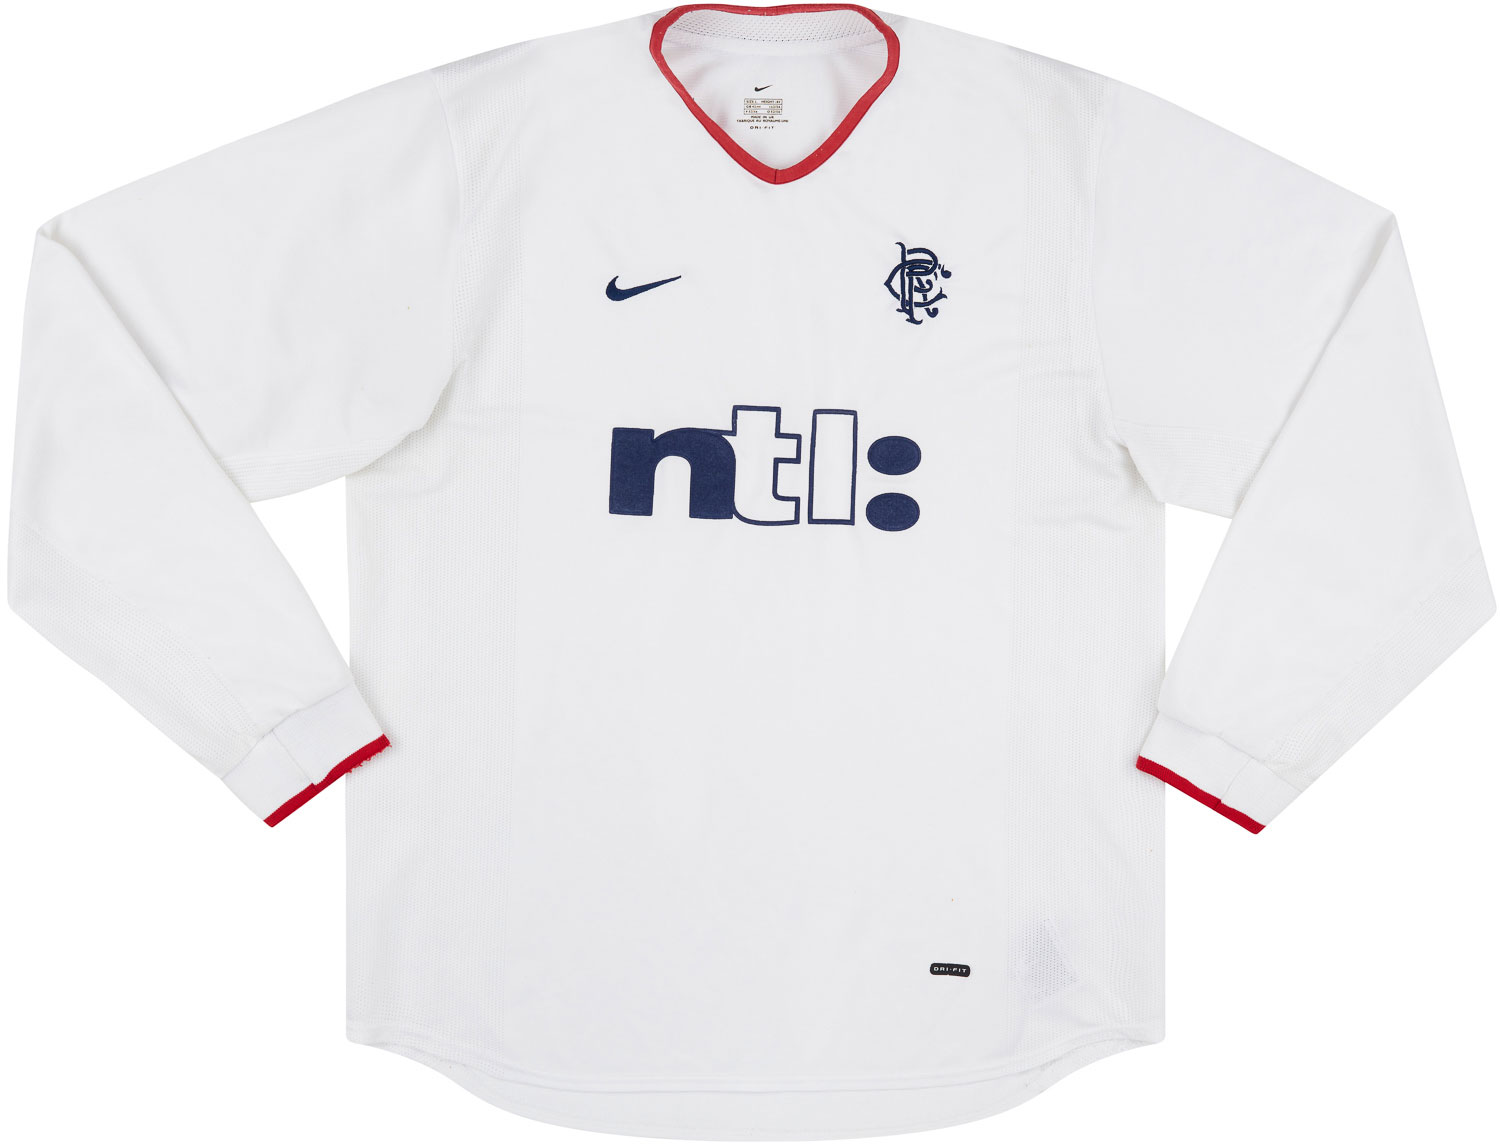 2001-02 Rangers Away Shirt - 8/10 - ()